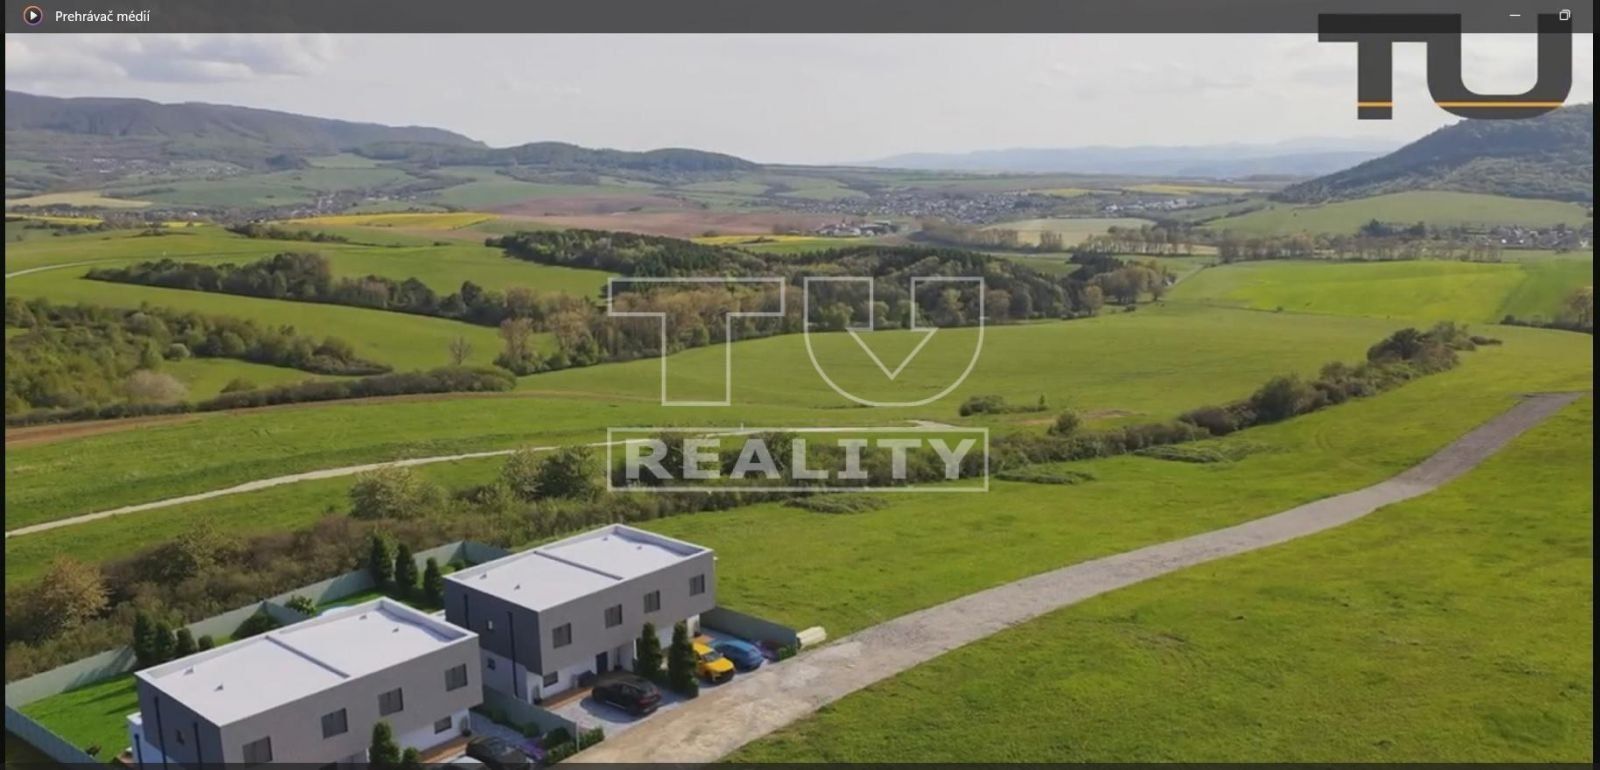 Pozemky určené na IBV, Prešov - Podhorany, 731 až 788 m2